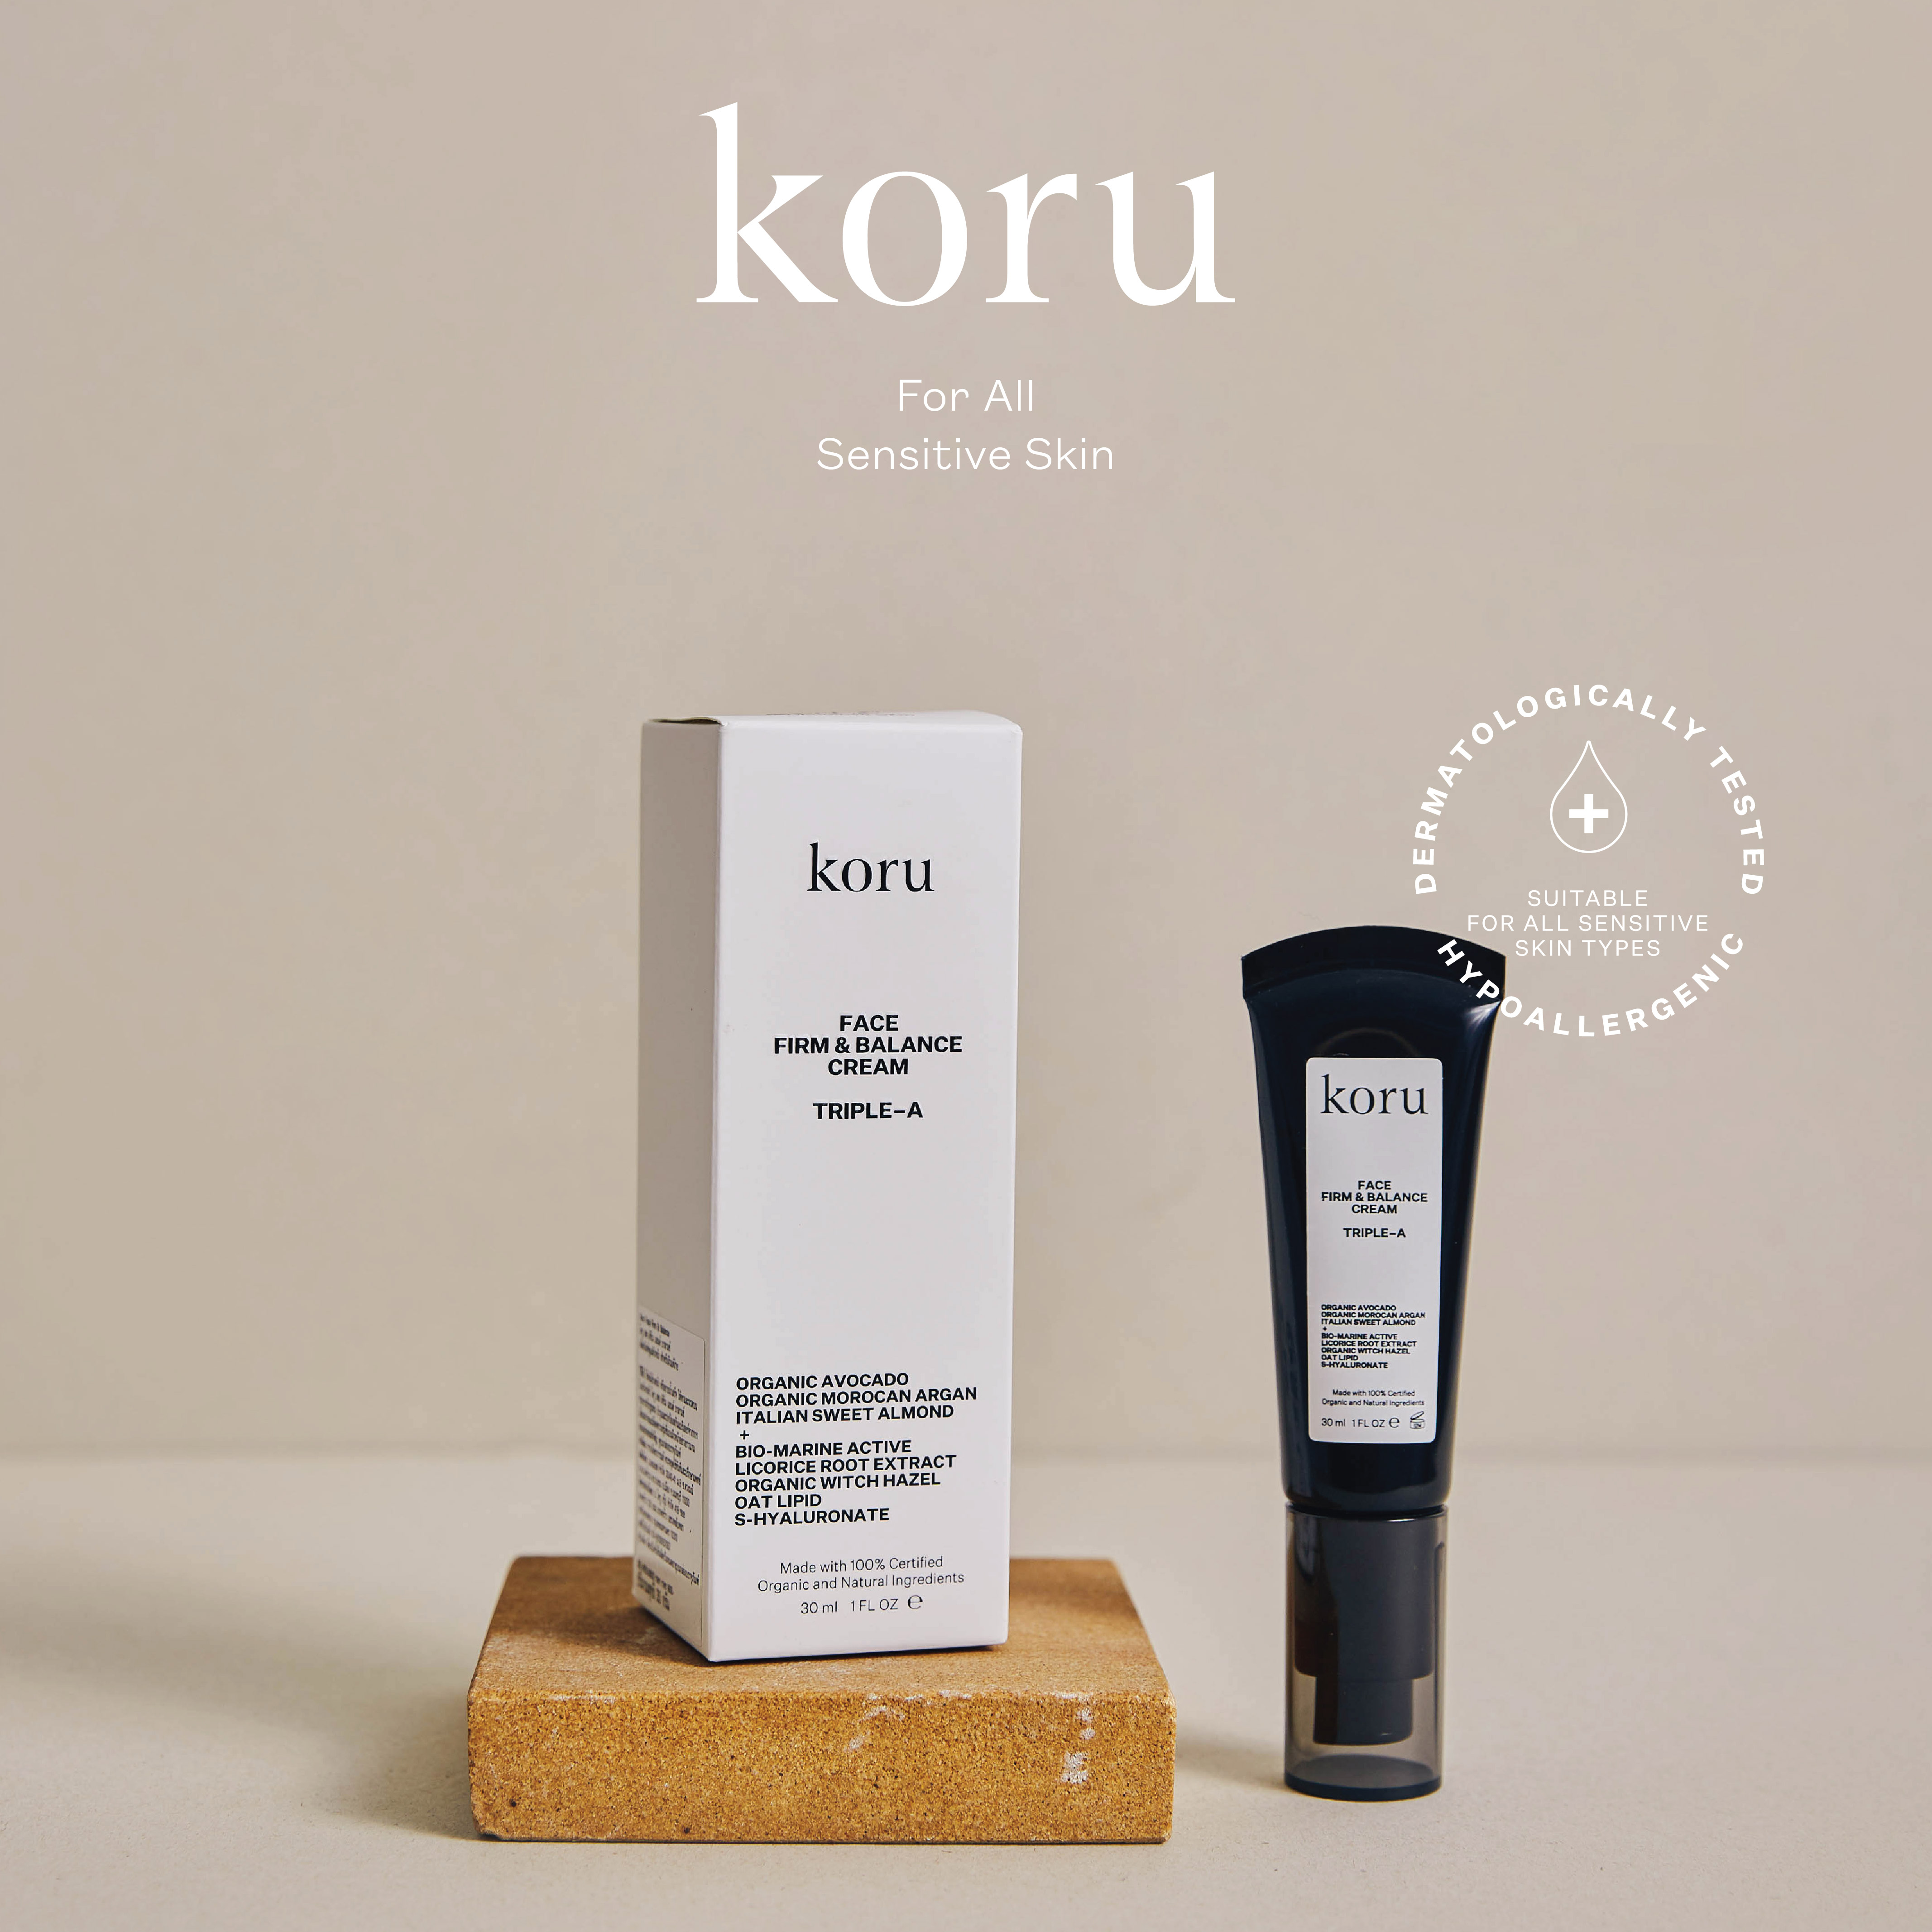 Koru Face Firm & Balance Cream